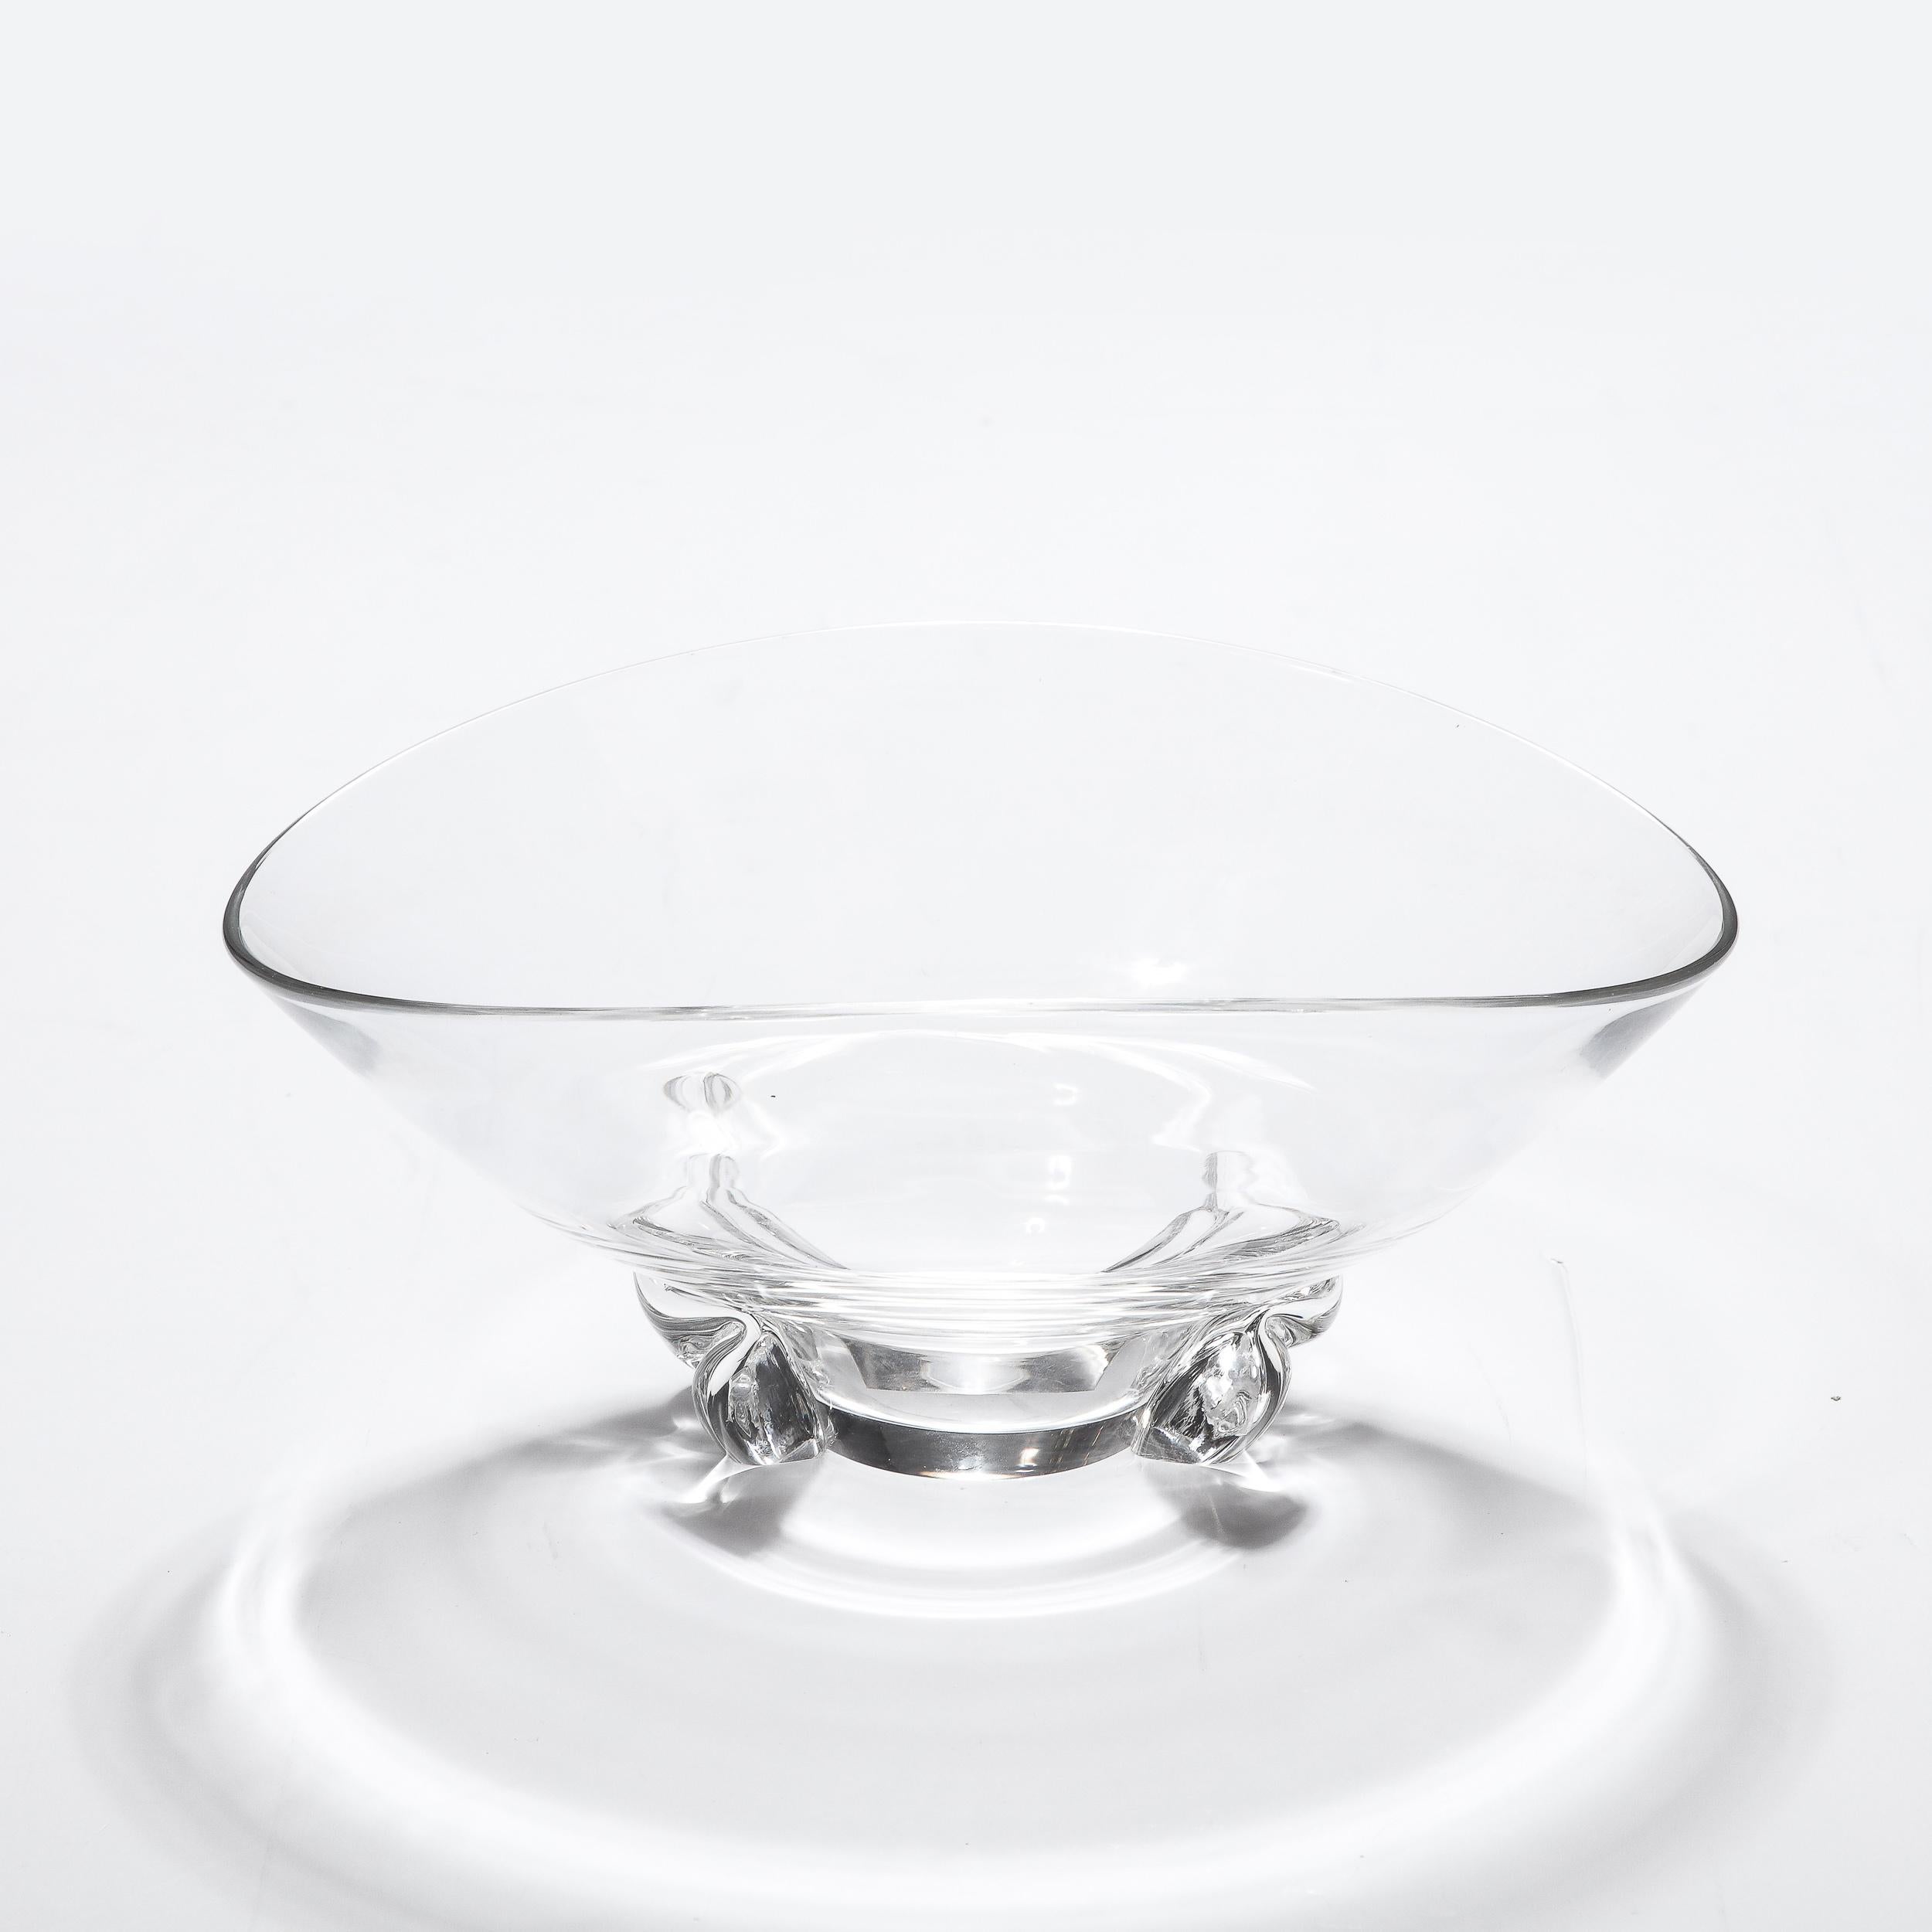 Diese moderne Schale aus mundgeblasenem Glas mit organischem Sockel ist signiert mit Steuben und stammt aus den Vereinigten Staaten, ca. 1960. Dieses Stück zeichnet sich durch einen schönen skulpturalen Sockel aus, der sich mit organischer